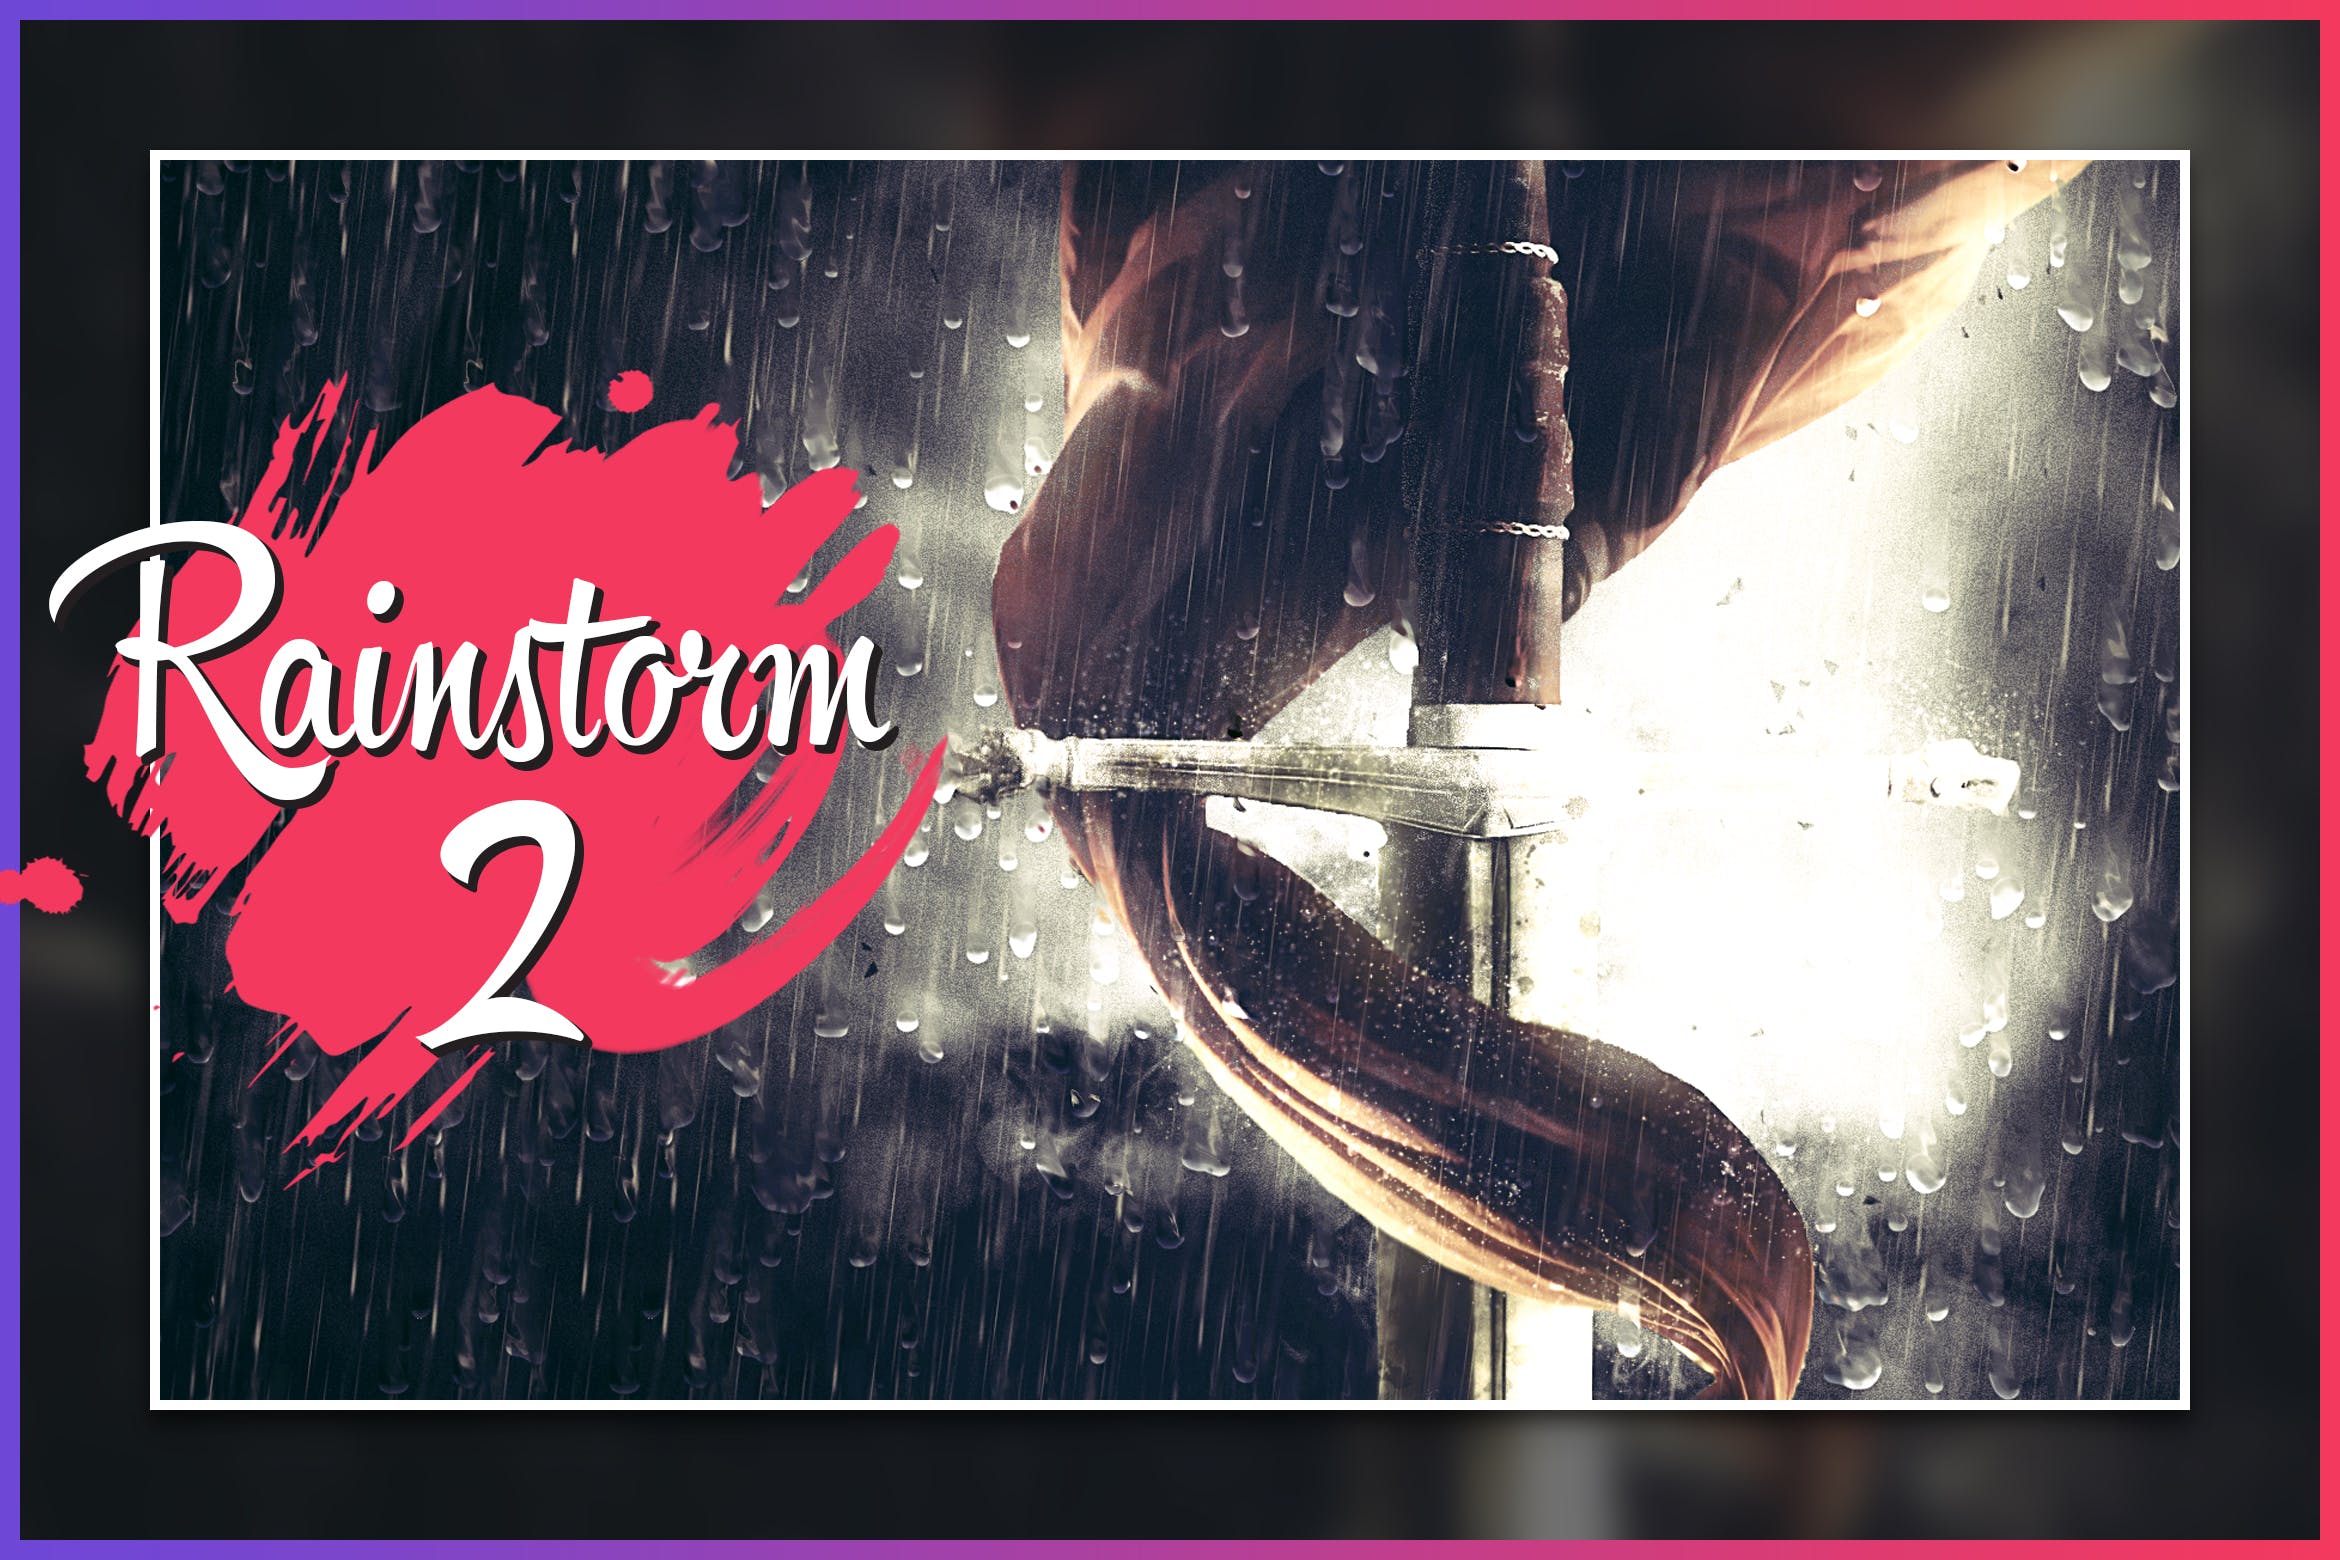 暴风雨照片背景特效第一素材精选PS动作 Rainstorm 2 CS4+ Photoshop Action插图